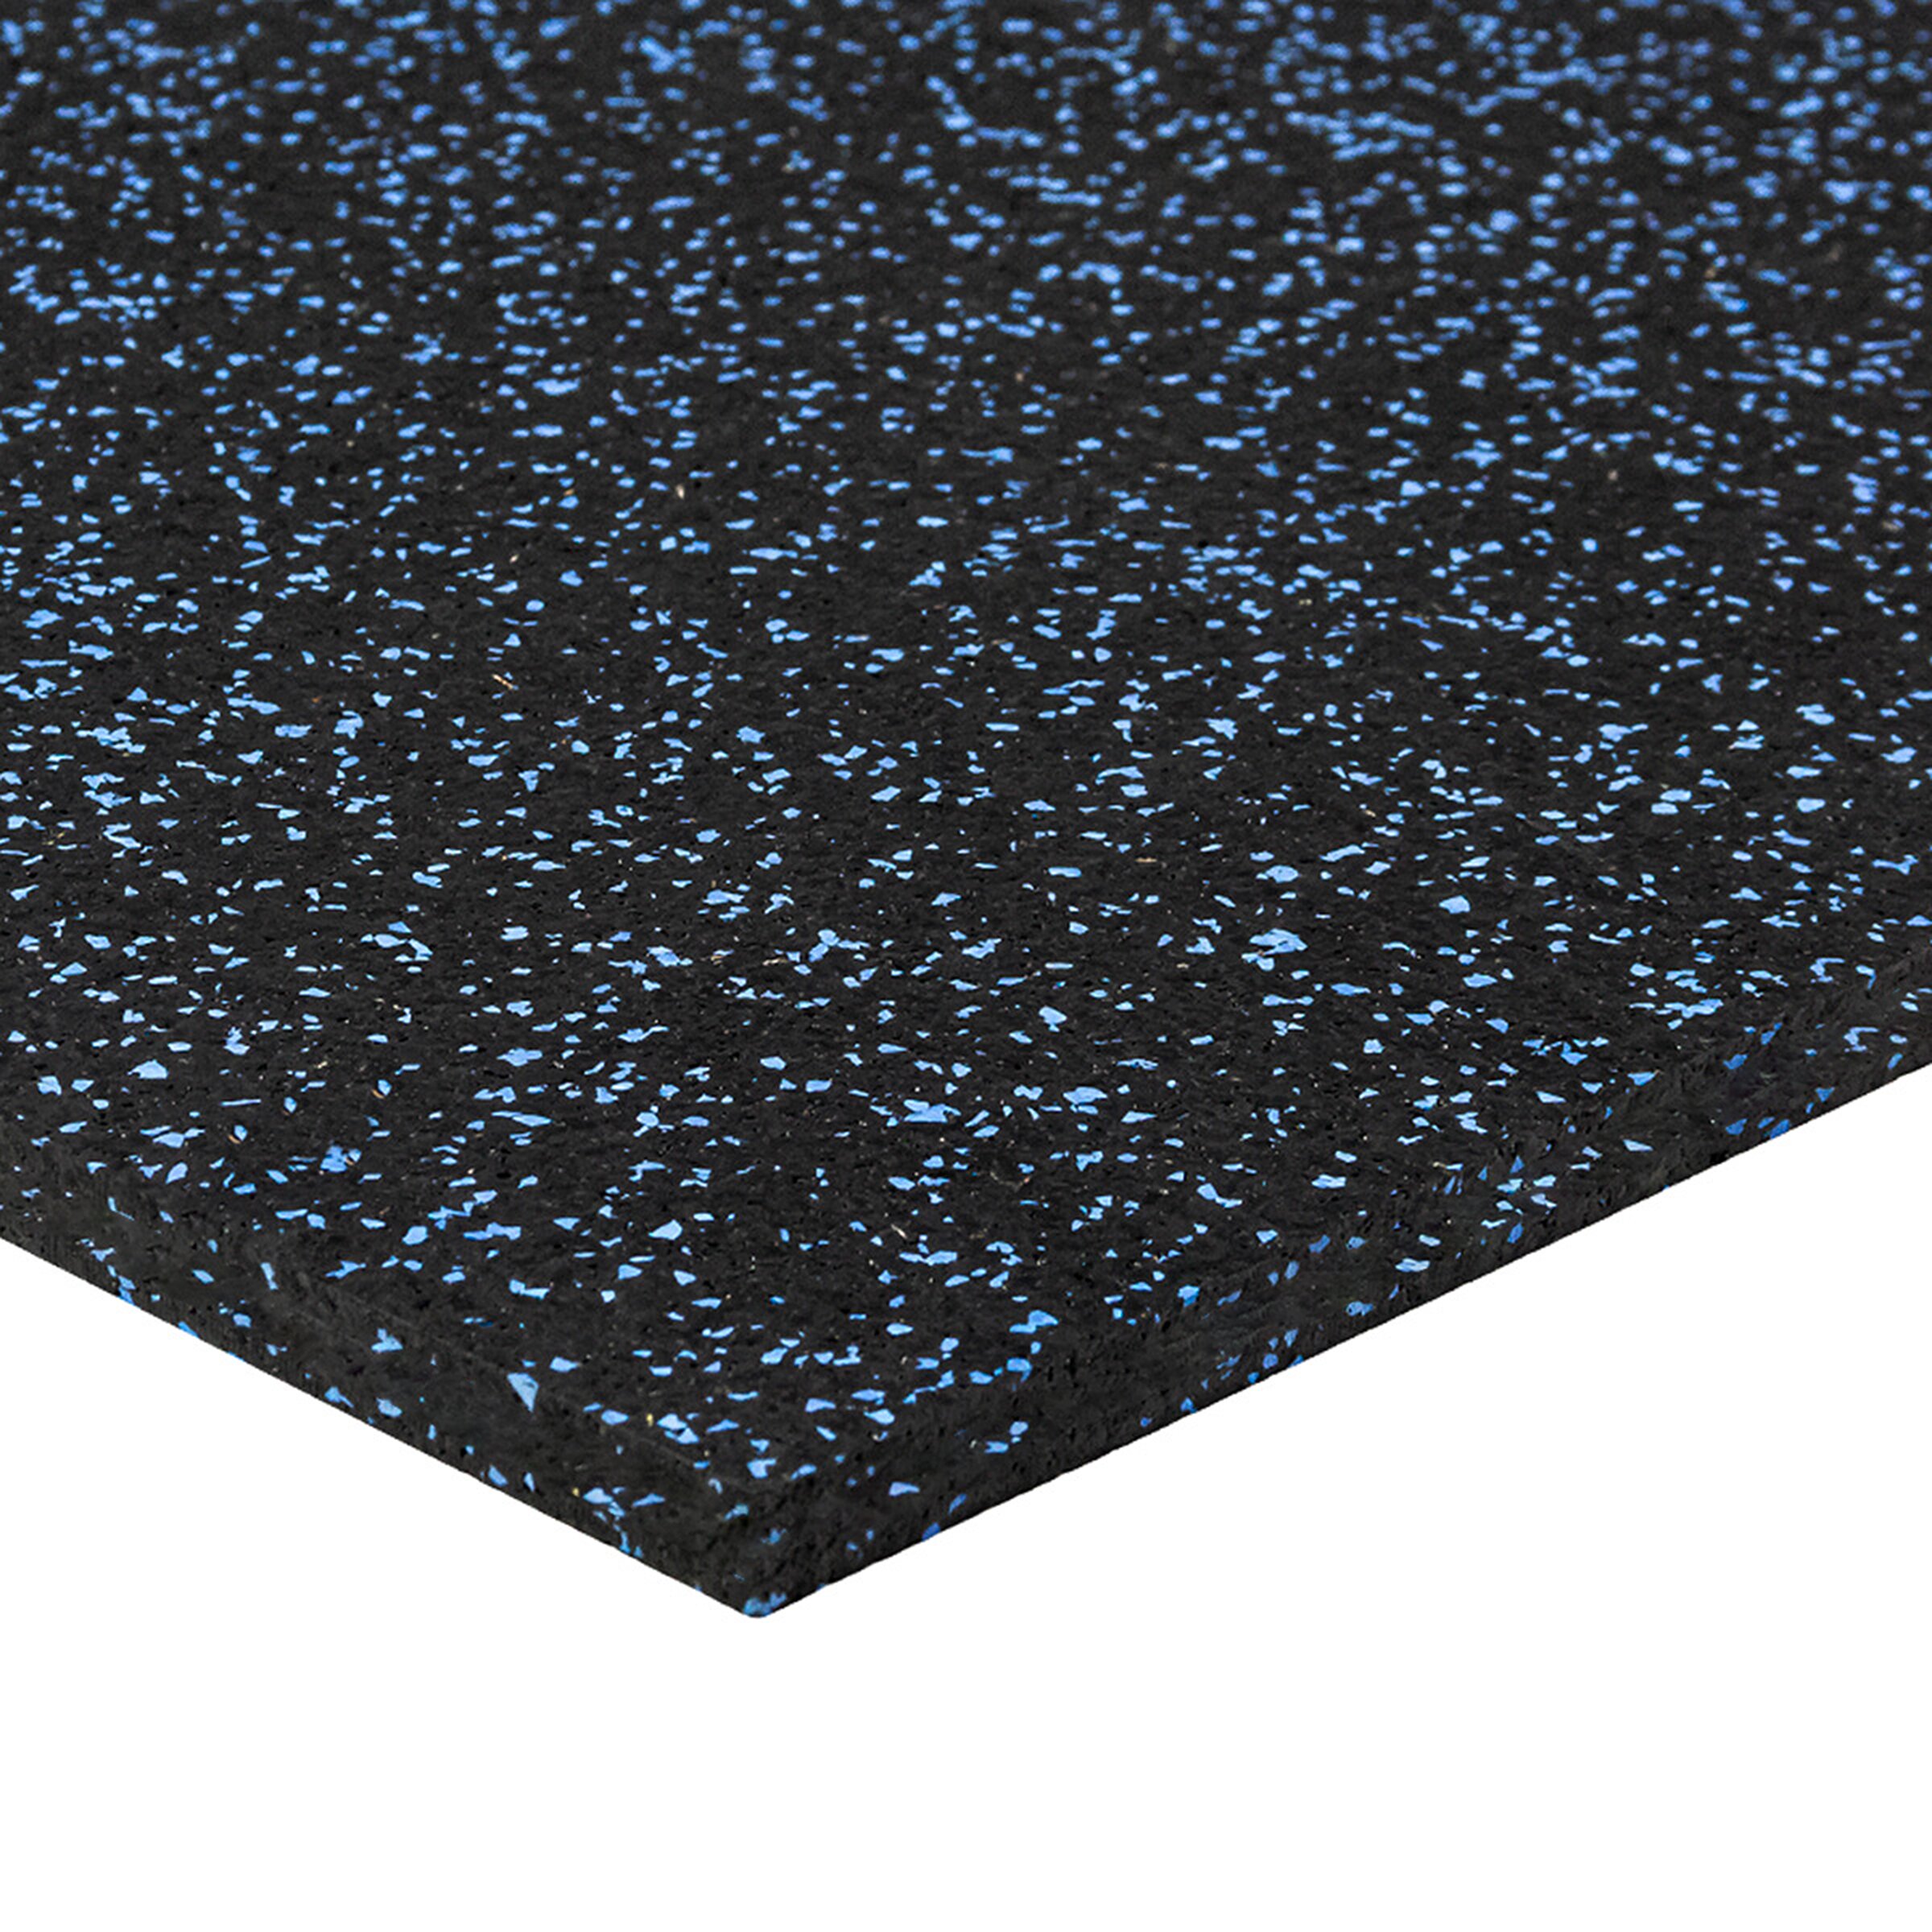 Černo-modrá gumová modulová puzzle dlažba (roh) FLOMA FitFlo SF1050 - délka 100 cm, šířka 100 cm, výška 1,6 cm